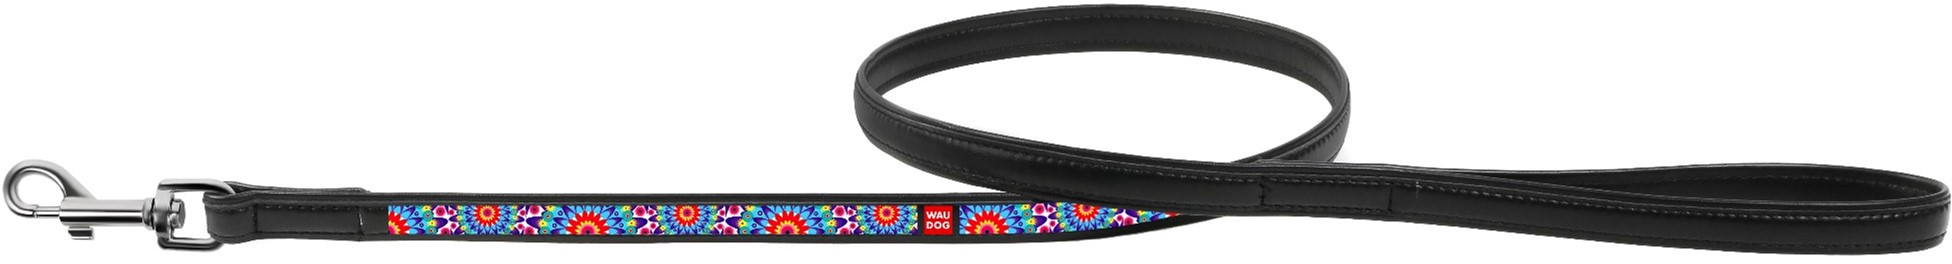 Акция на Поводок Collar WauDog с рисунком Цветы 122 см 25 мм Черный (37921) (4823089310015) от Rozetka UA